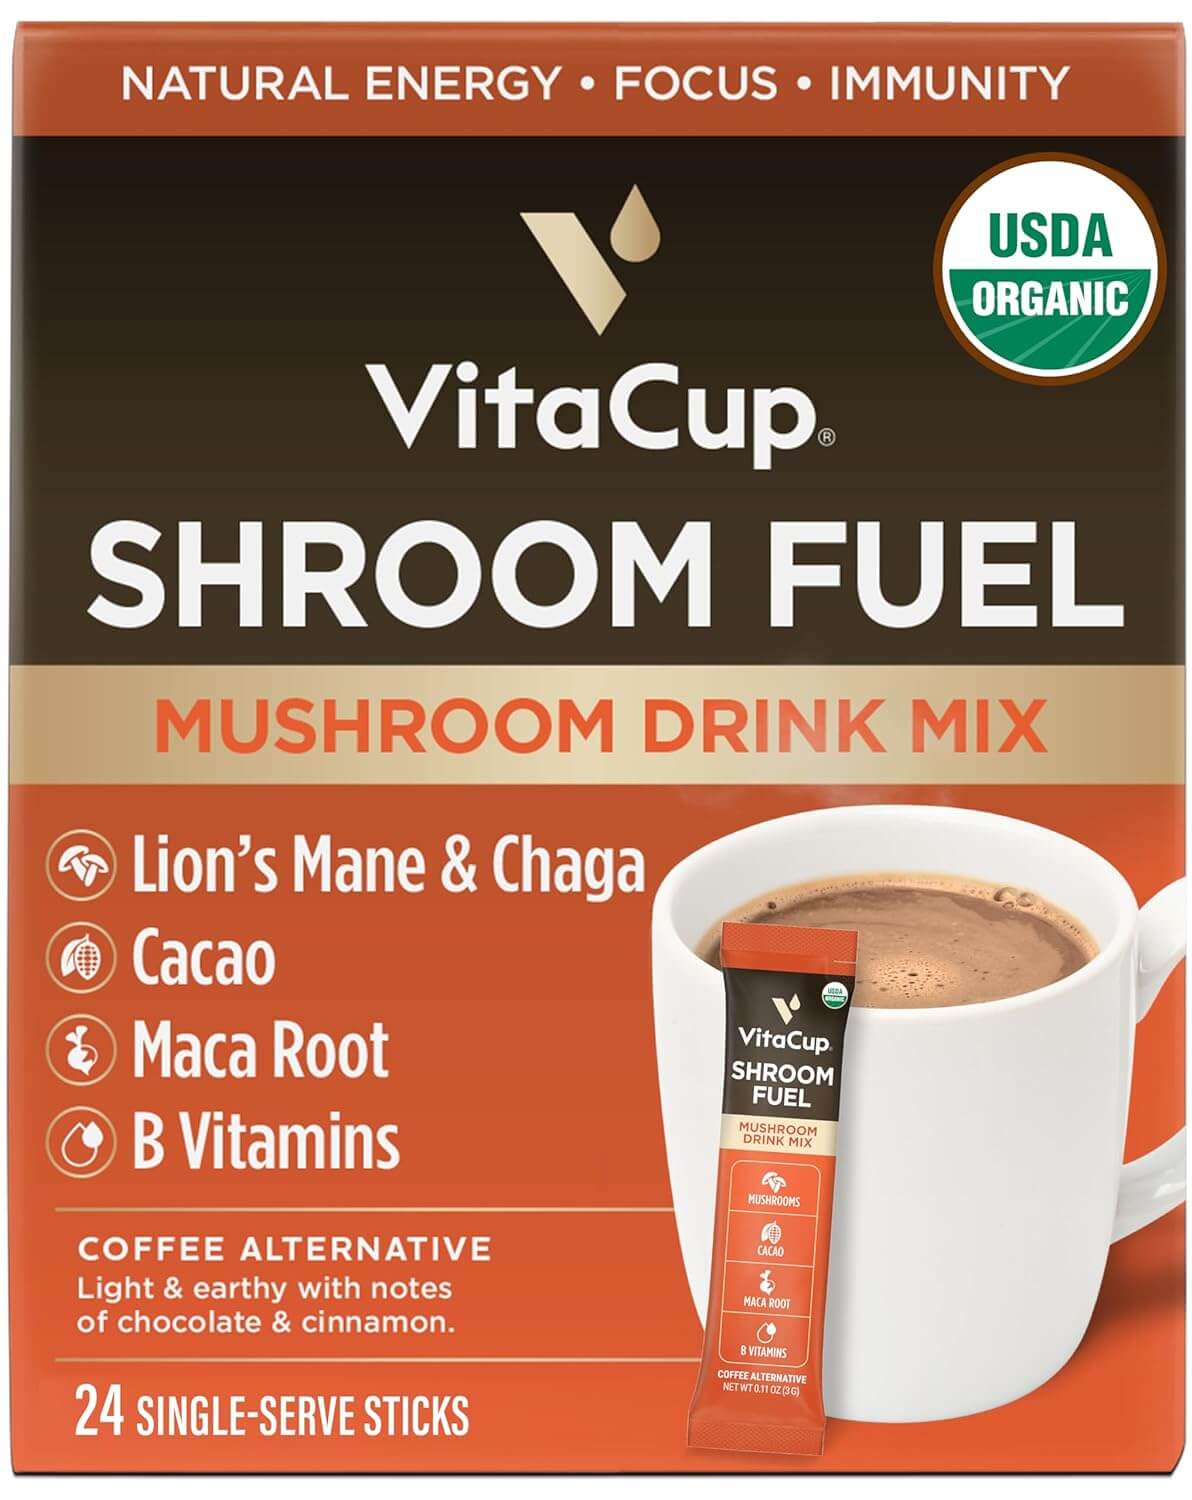 VitaCup Shroom Fuel